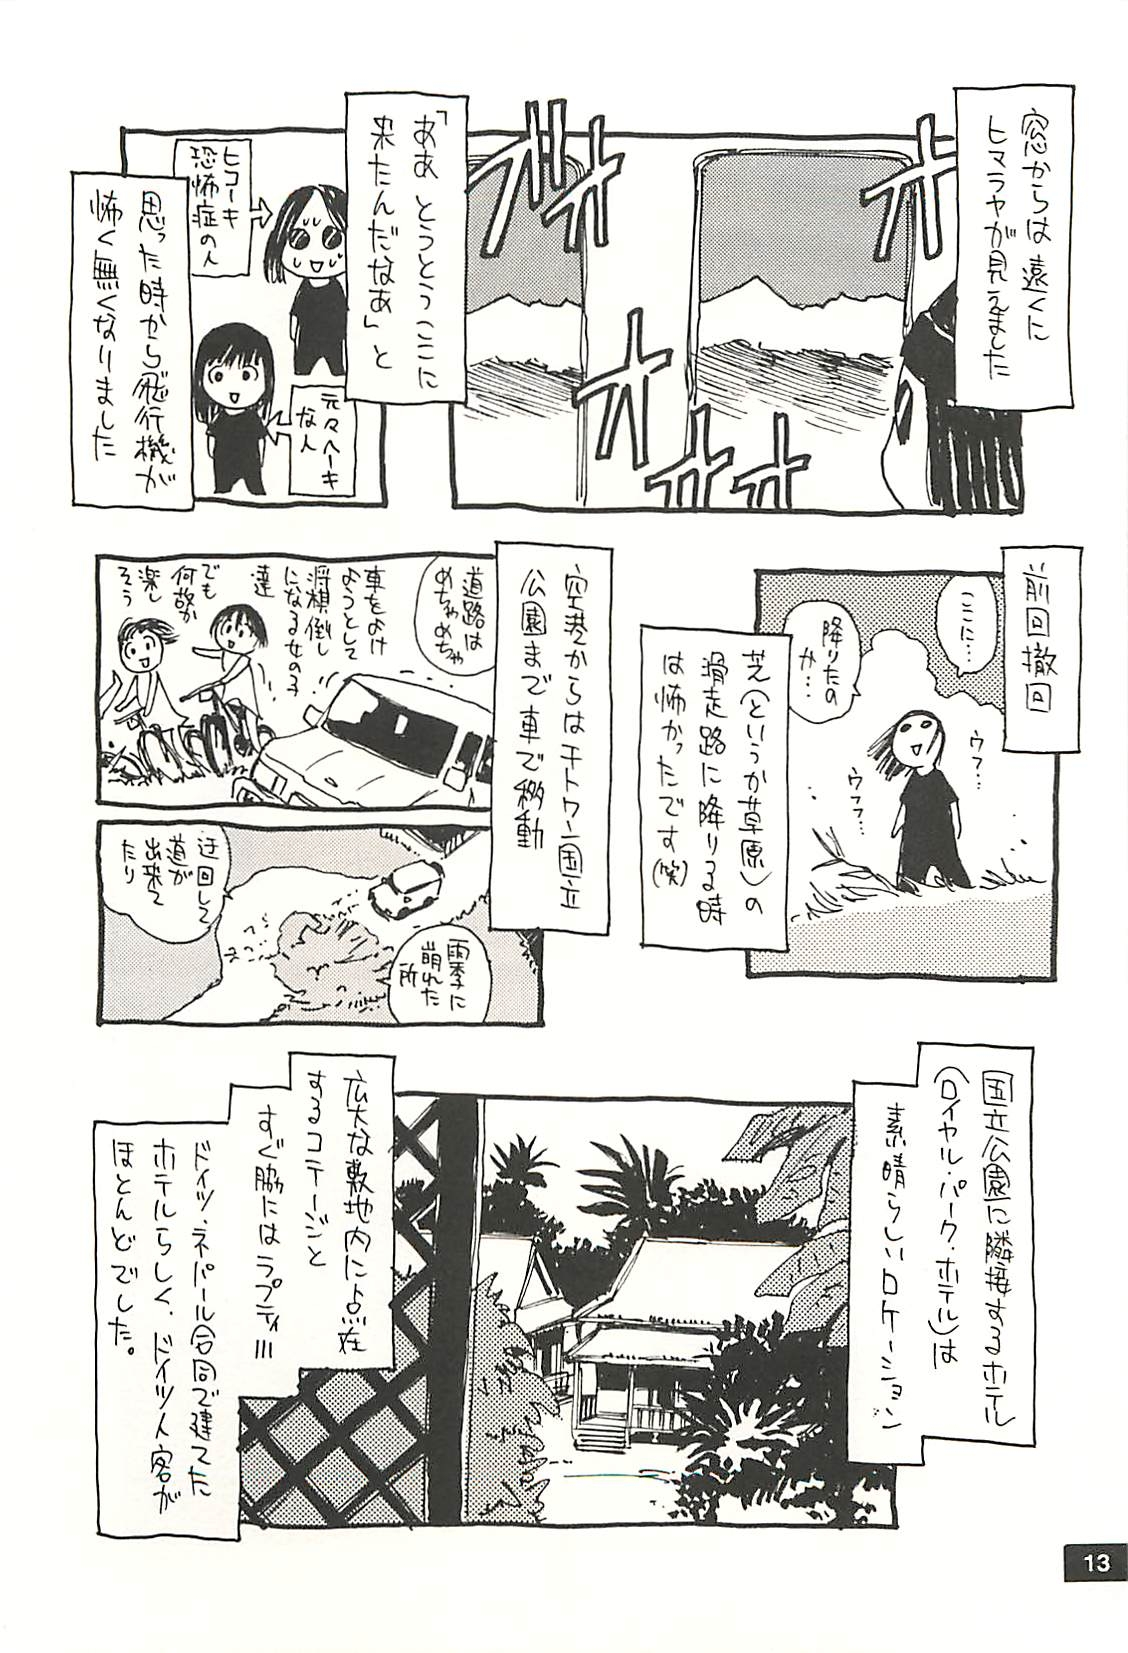 [NOUZUI MAJUTSU, NO-NO'S (Kawara Keisuke, Kanesada Keishi)] Nouzui Kawaraban Hinichijoutekina Nichijou NEPAL-hen 11